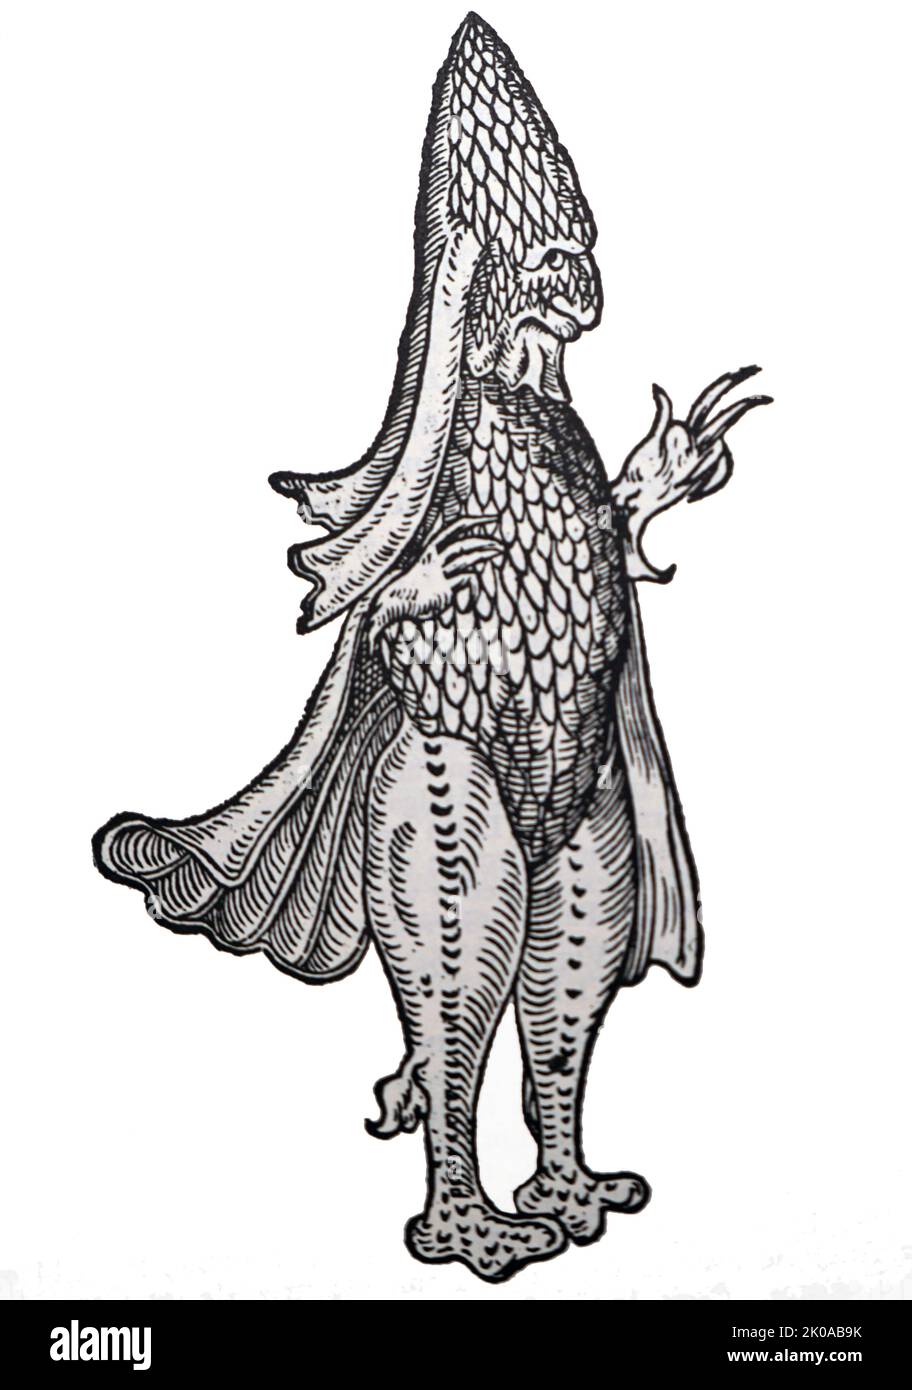 El monje marino (pez-monje o rape) fue una criatura marina encontrada frente a la costa oriental de la isla danesa de Zelanda en 1546. Fue descrito como un 'pez' que se asemejaba exteriormente a un monje humano en su hábito. El monje marino de Rondelet (1554) lo llamó 'el pez con el hábito de un monje (piscis monachi habitu); lo clasificó como un hombre de merman (homo maris) Foto de stock